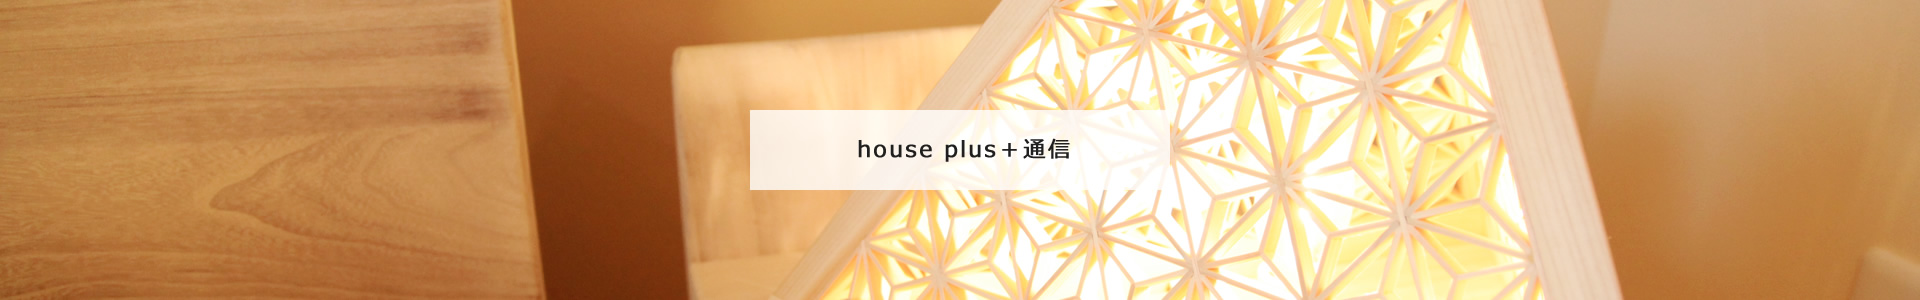 house + 通信